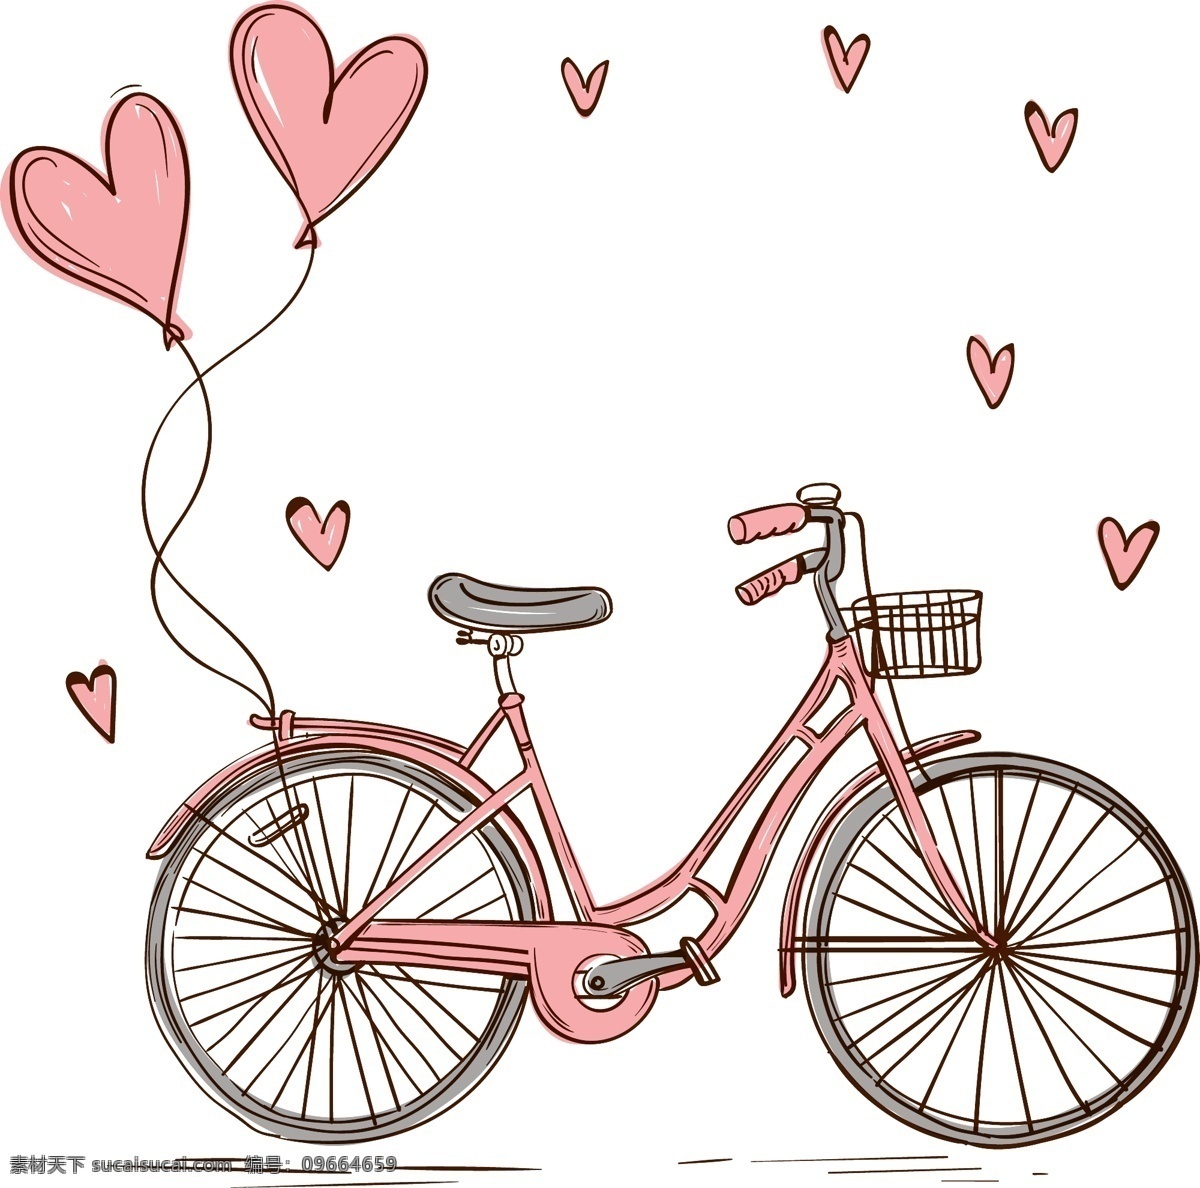 彩绘 爱心 气球 单车 爱情 矢量 彩绘爱心 爱心气球 爱心单车 爱情单车 结婚单车 婚庆单车 单车矢量 单车运动 结婚庆素材 生活百科 体育用品